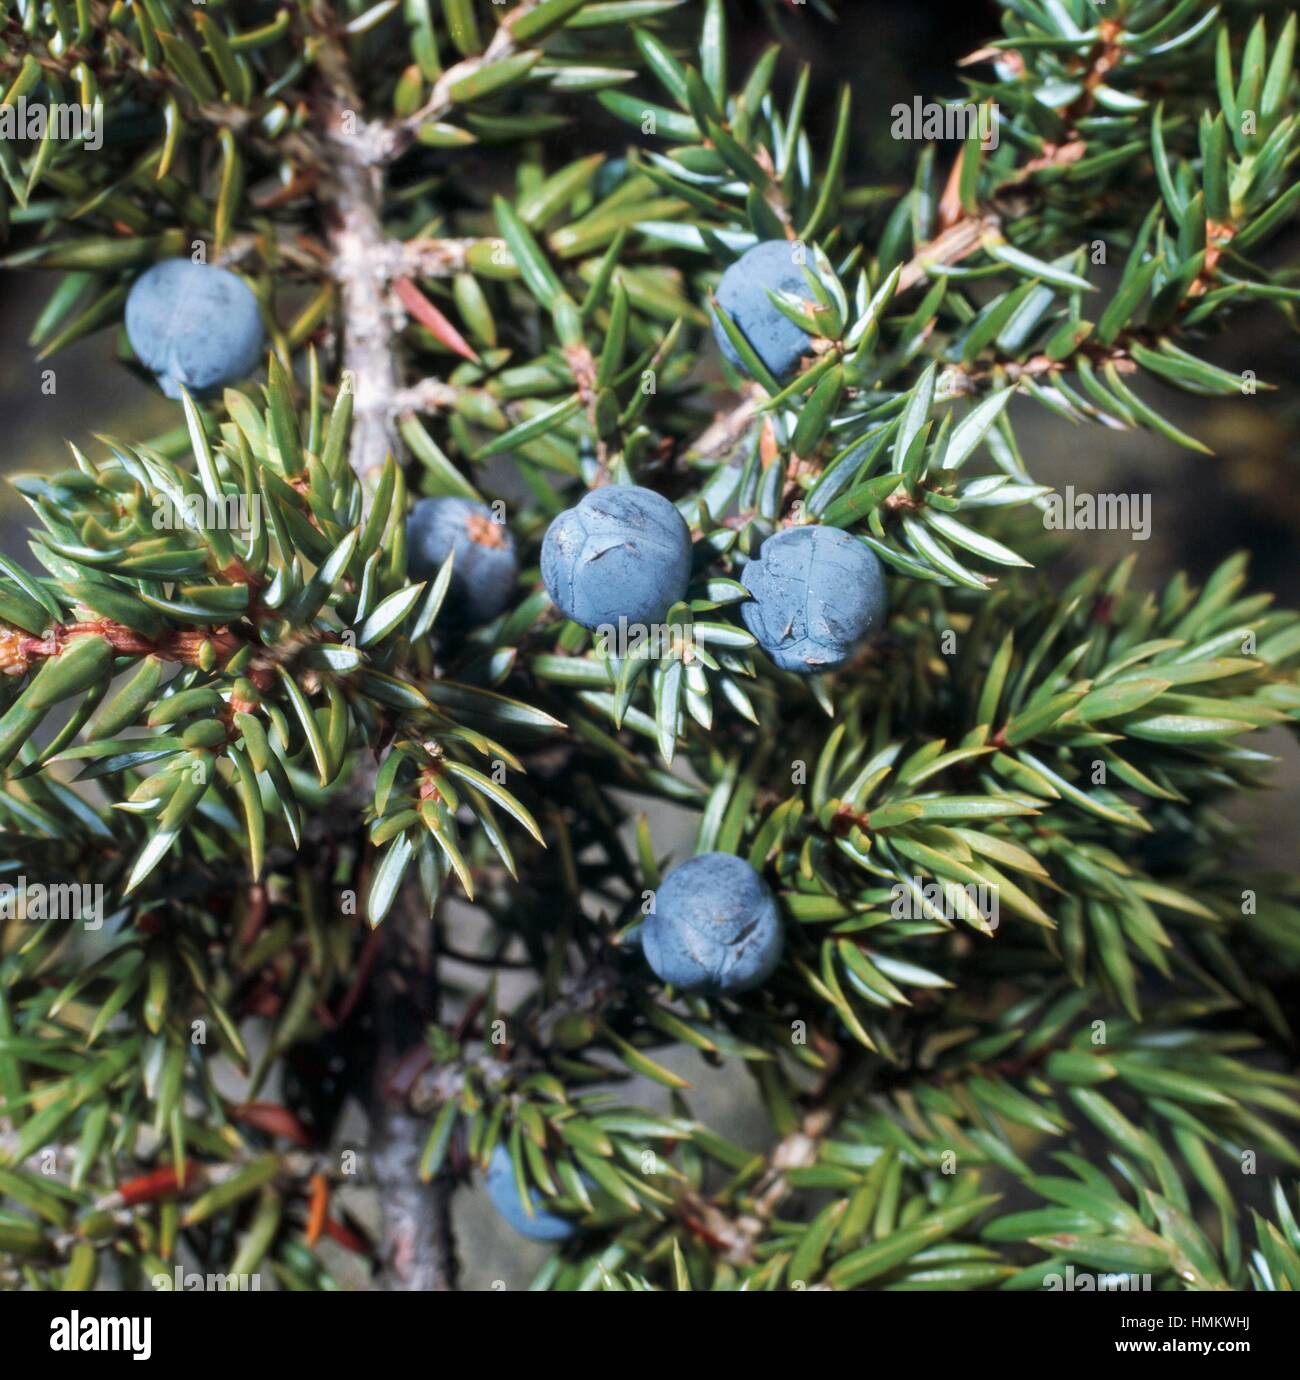 Juniper leaves and berries (Juniperus sp), Cupressaceae. Stock Photo